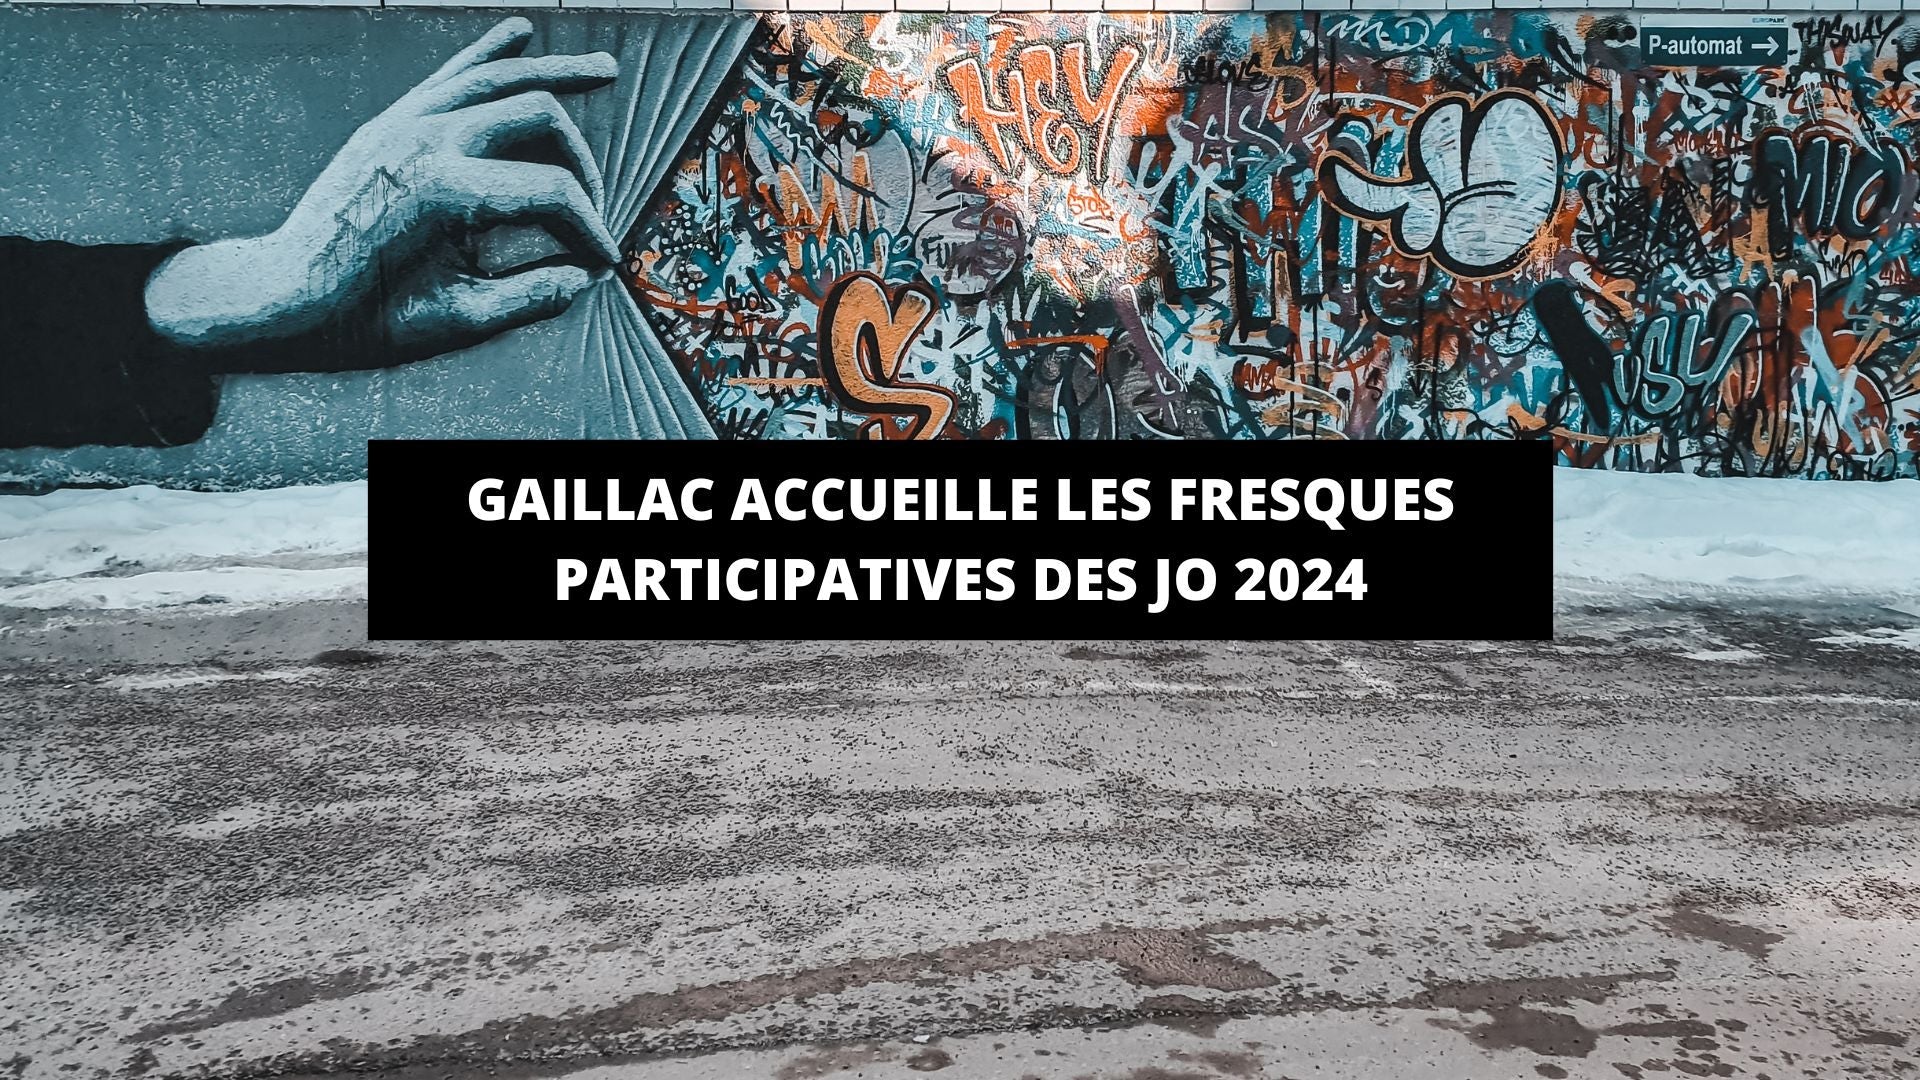 Gaillac accueille les fresques participatives des JO 2024 - The Art Avenue